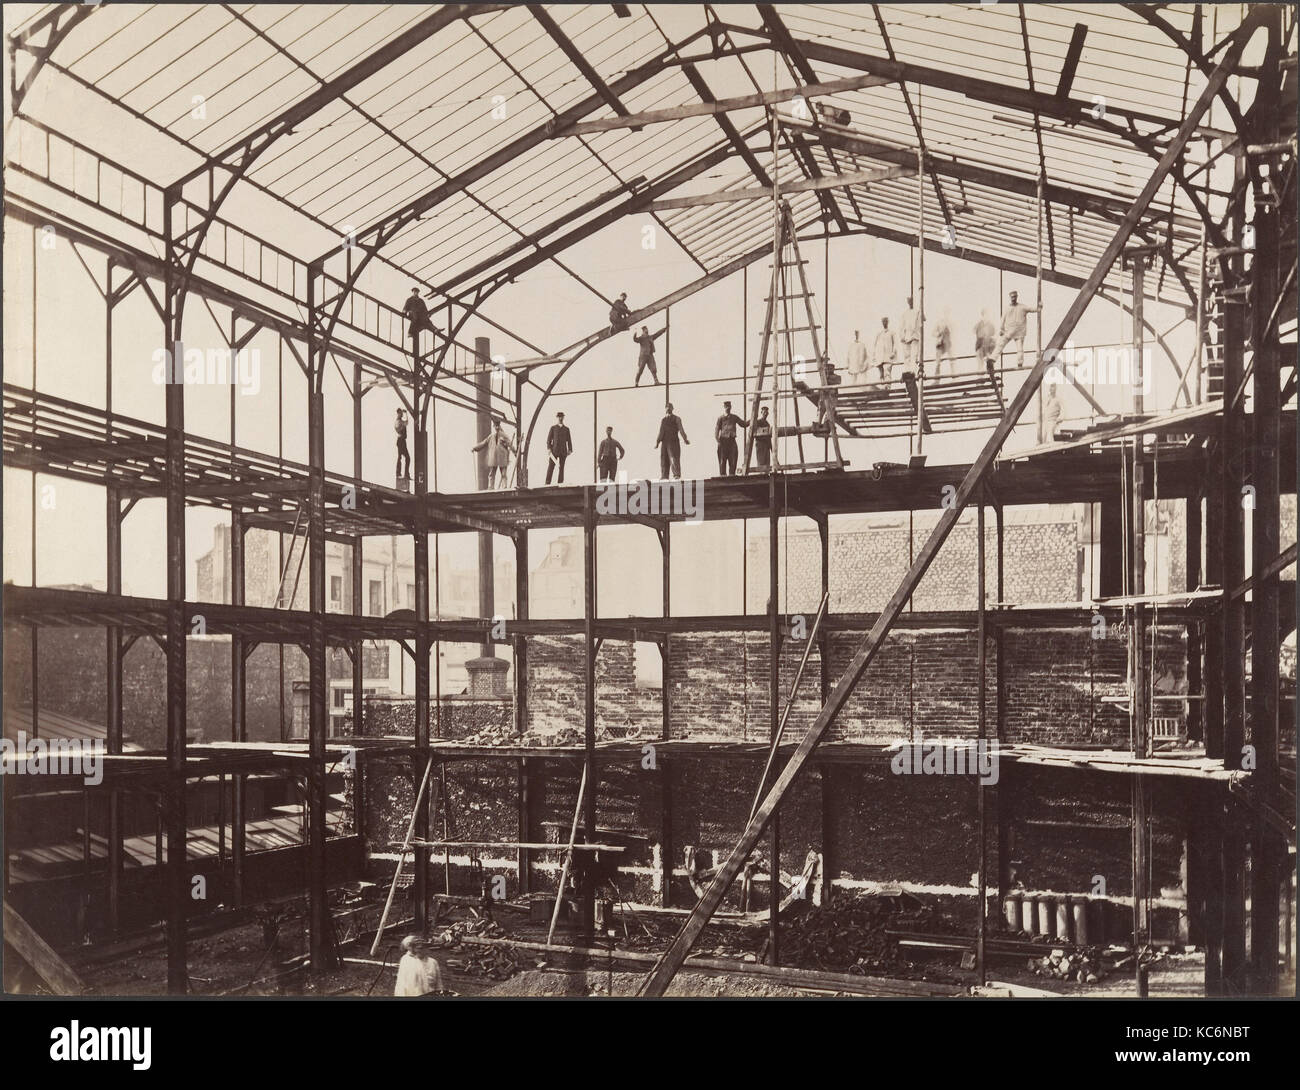 Sito in costruzione, 1880, albume silver stampa dal vetro negativo, IMMAGINE: 36,8 x 47,8 cm (14 1/2 x 18 13/16 in.), Fotografie Foto Stock